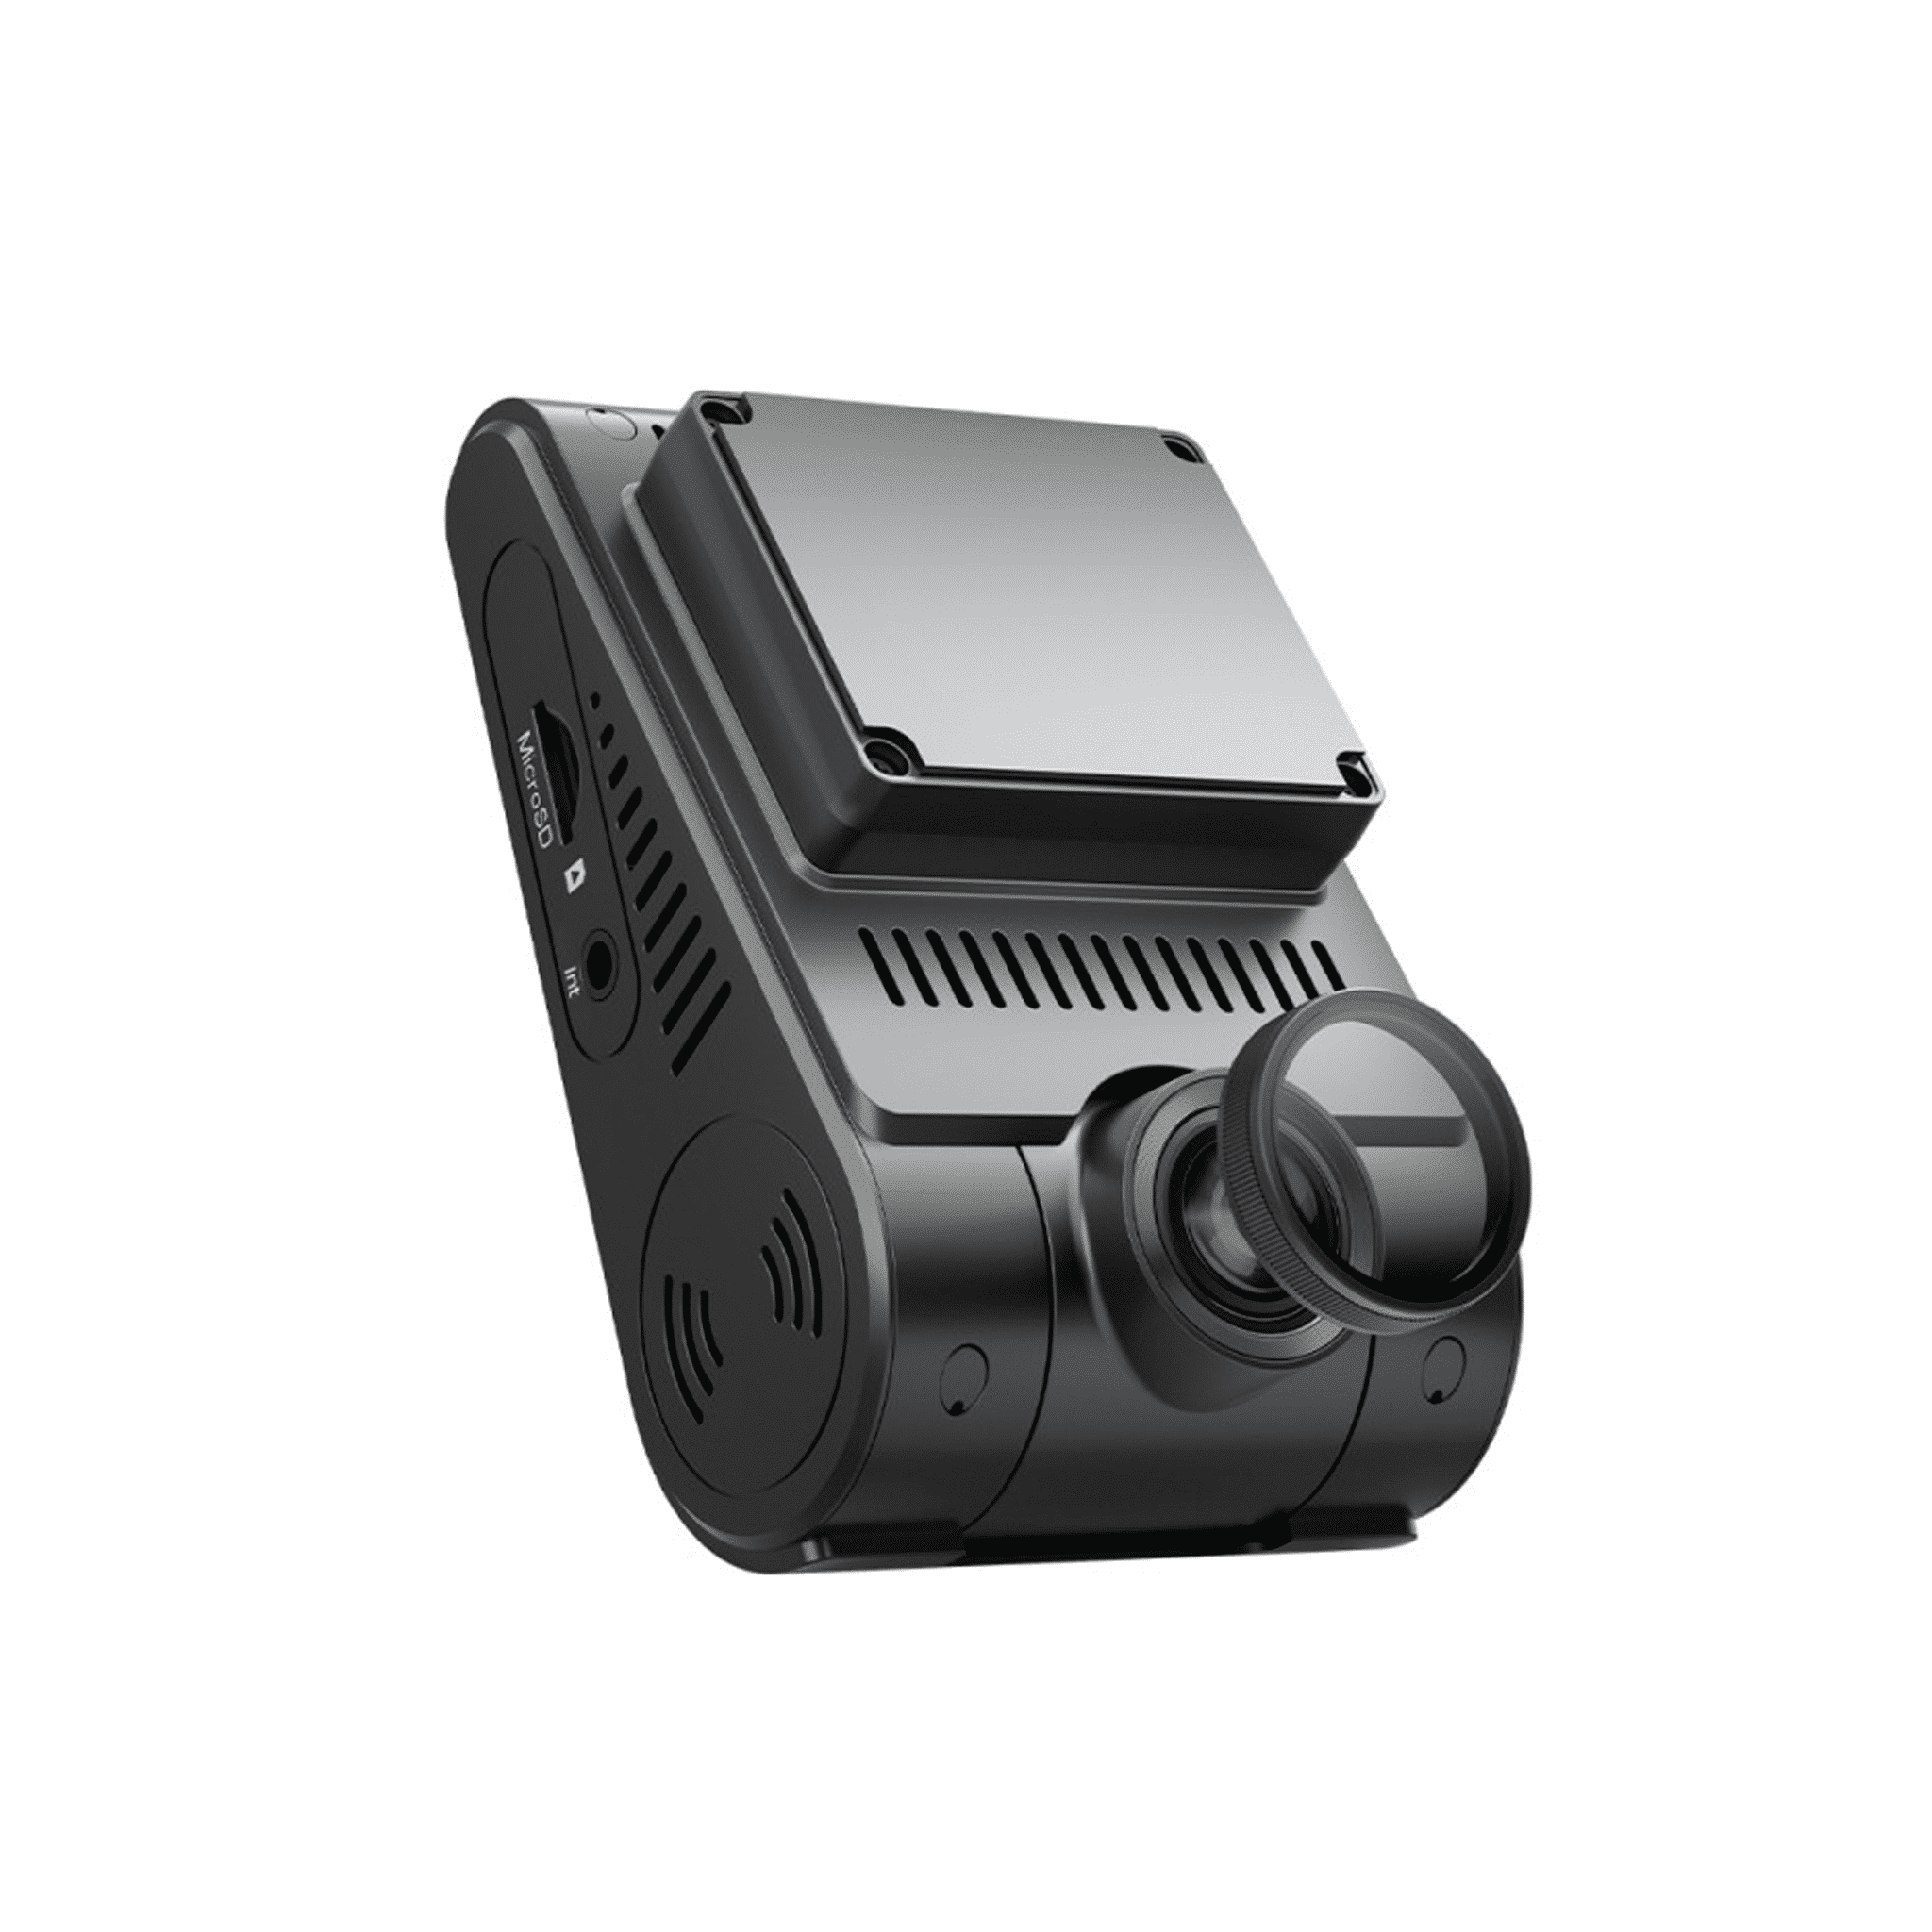 VIOFO A229 Plus 2Ch 1440p Dashcam